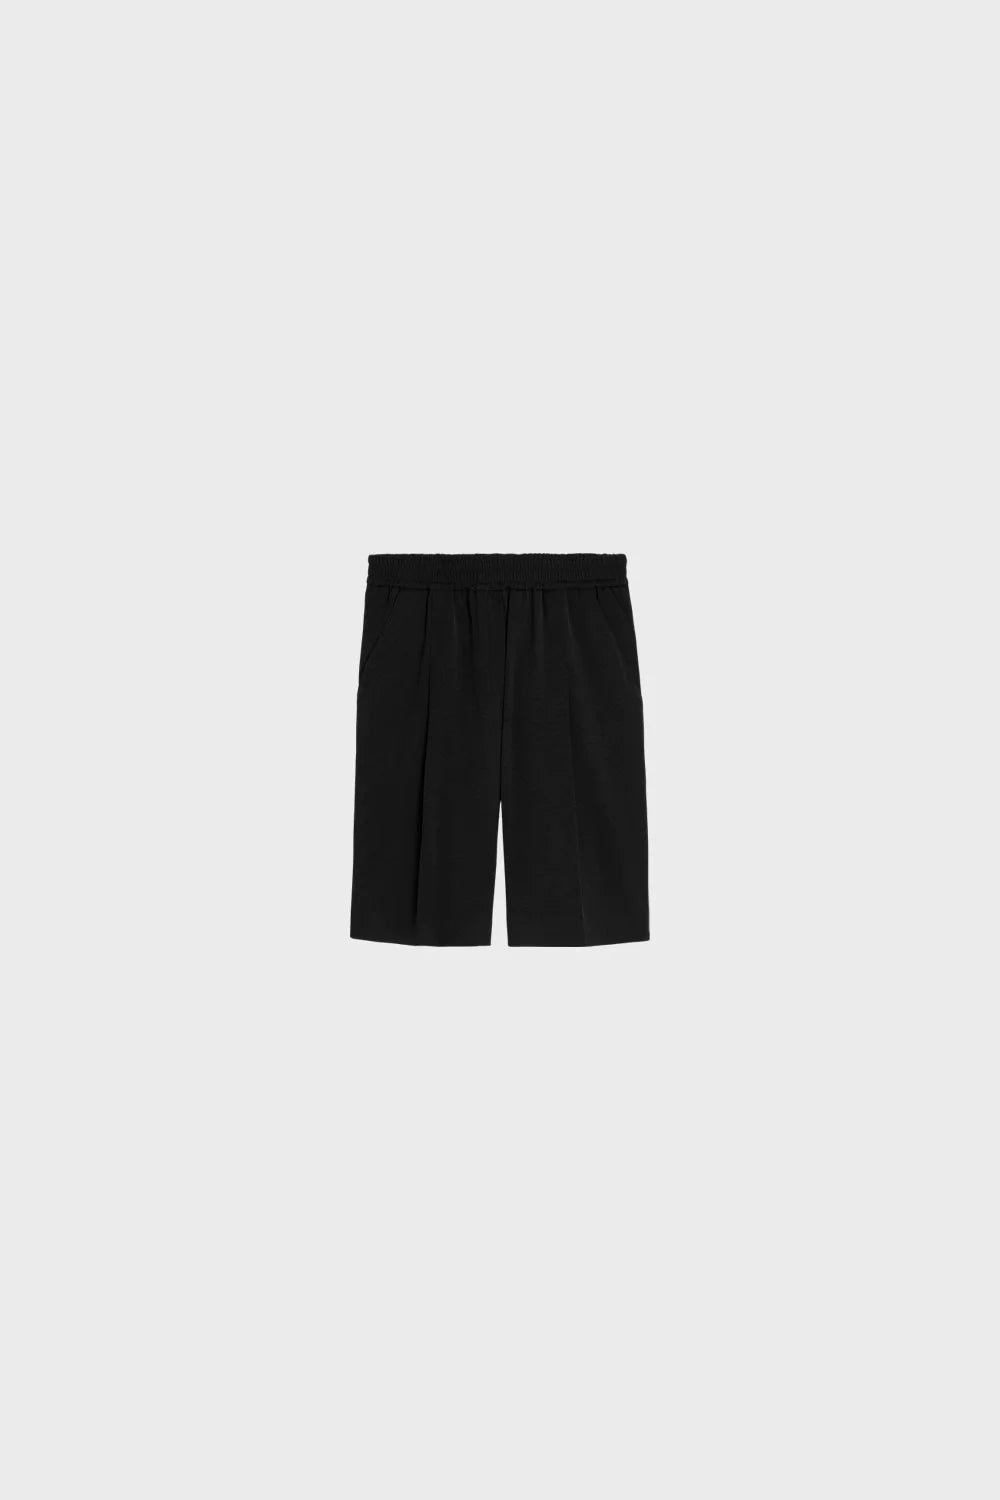 Easy Shorts In Black 0091